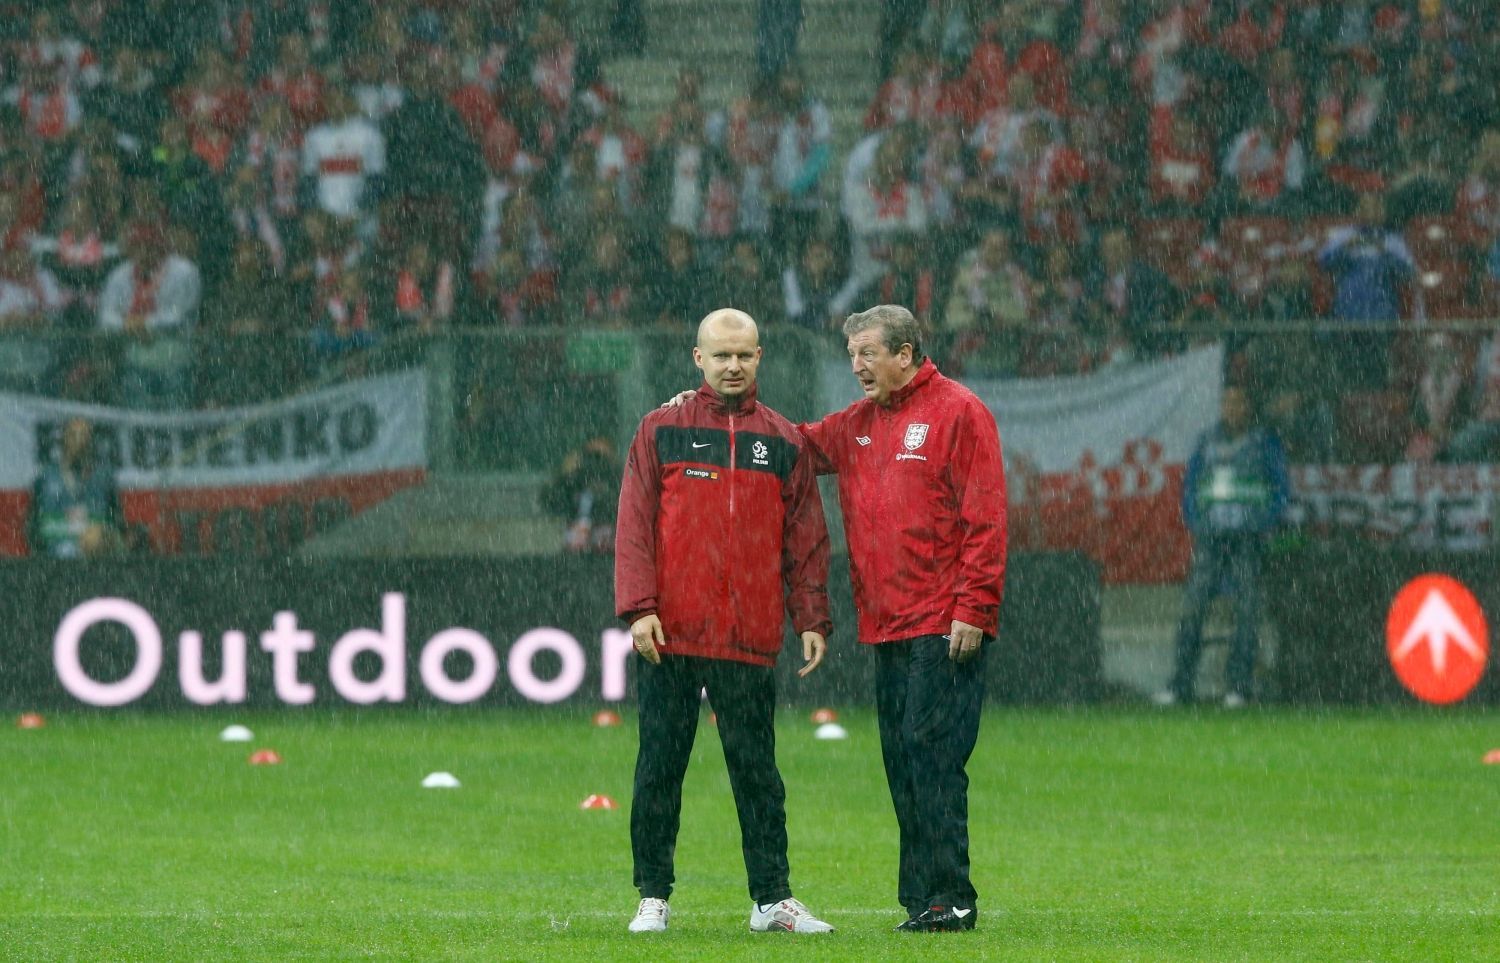 Déšť ve fotbalovém kvalifikačním utkání pro MS 2014 mezi Polskem a Anglií.